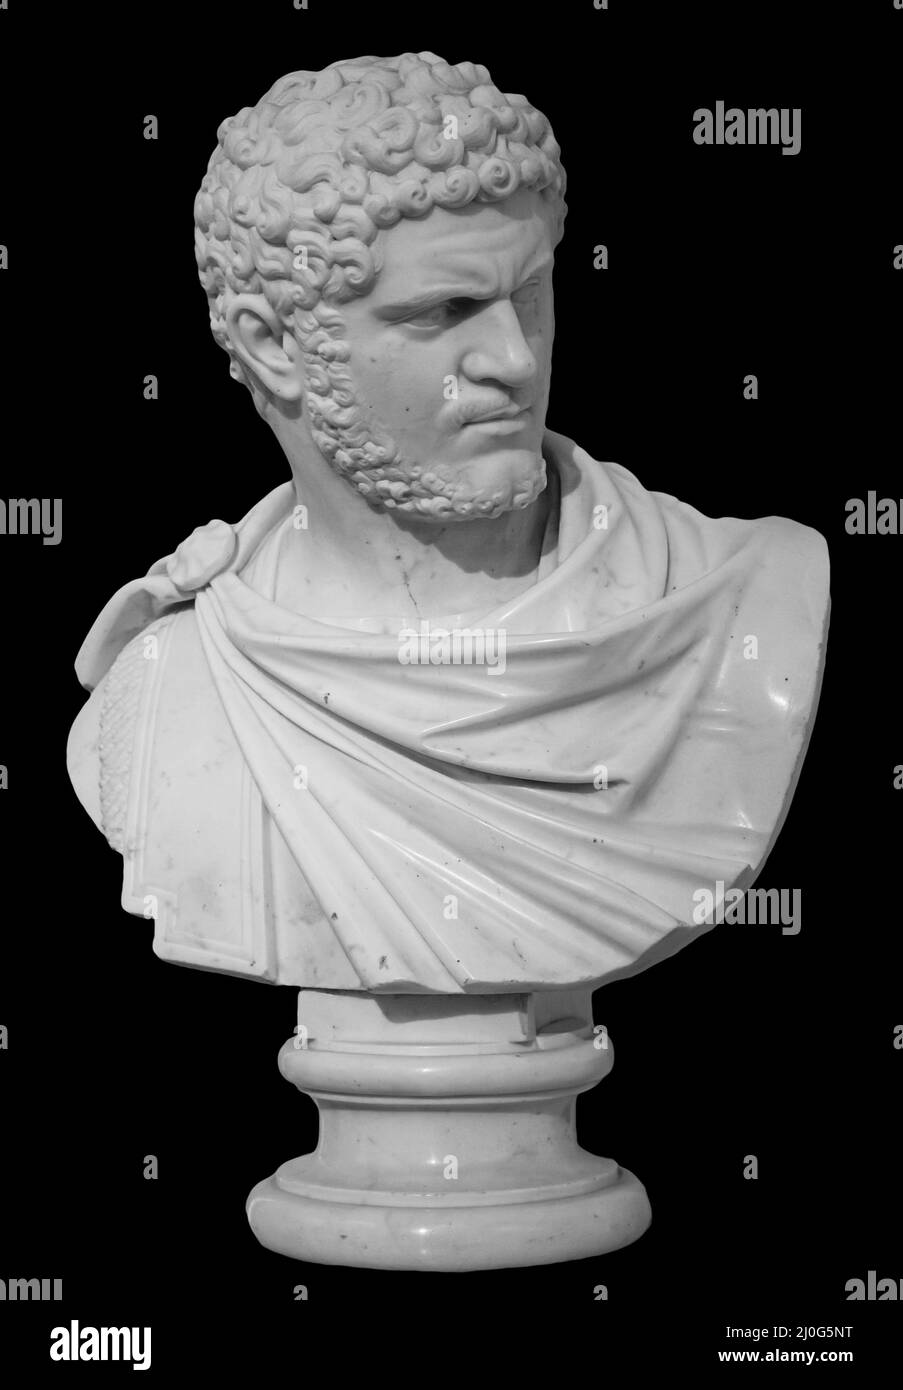 Ancient white marble sculpture bust of Caracalla. Marcus Aurelius Severus Antoninus Augustus known as Antoninus. Roman emperor. Stock Photo